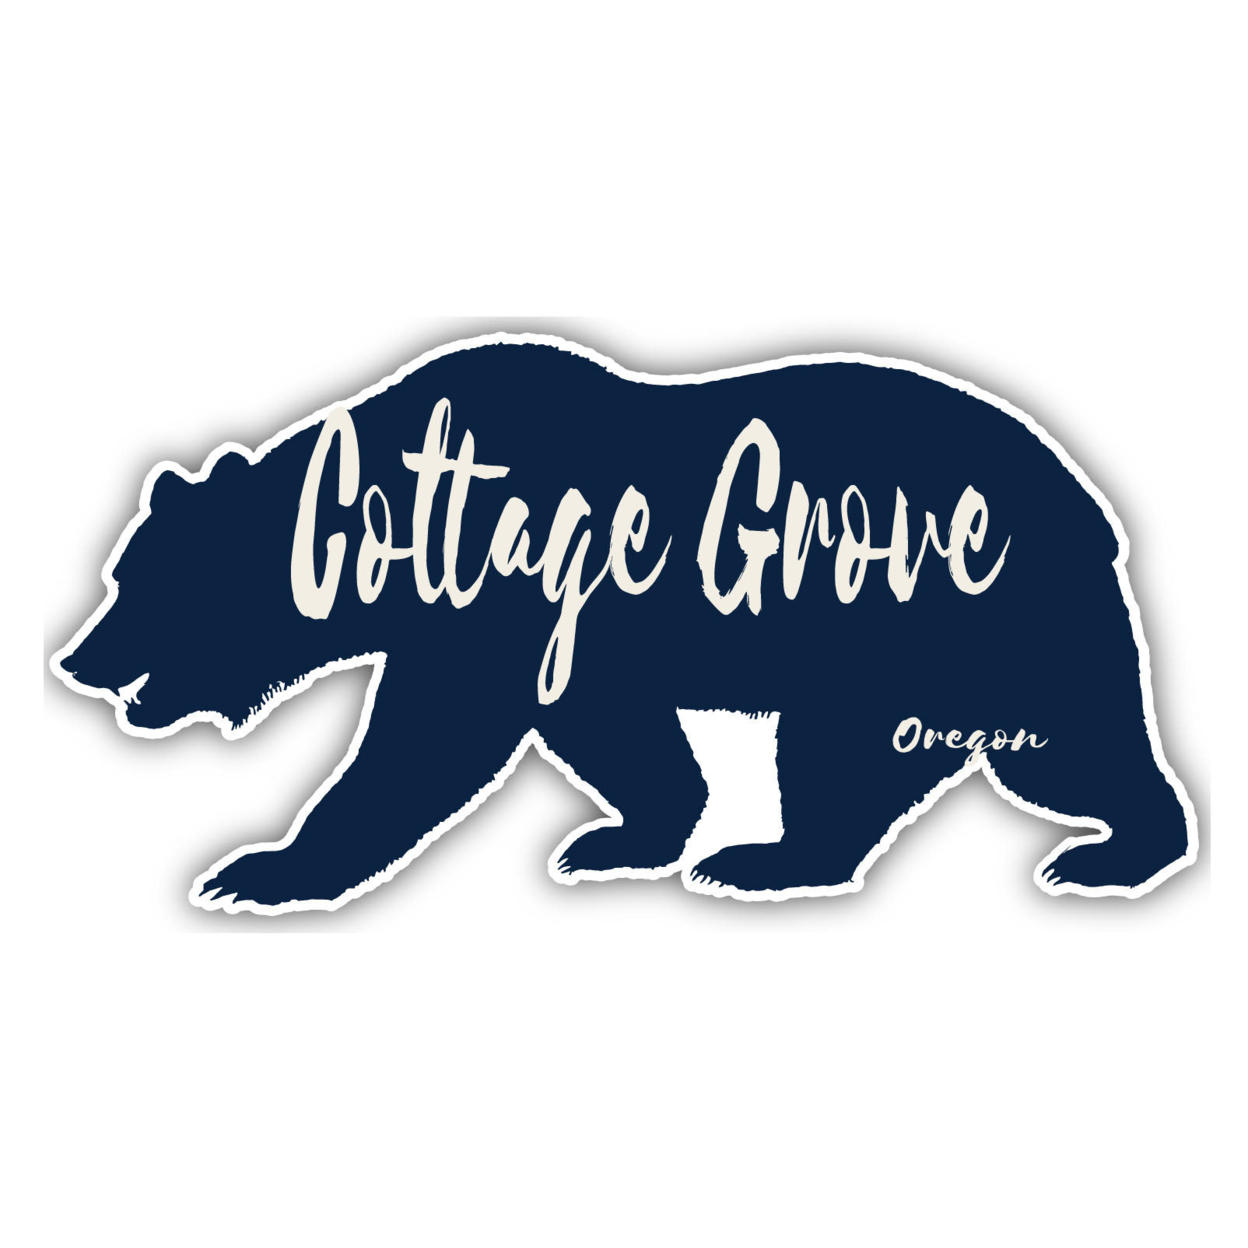 Cottage Grove Oregon Souvenir Decorative Stickers (Choose Theme And Size) - Single Unit, 8-Inch, Tent